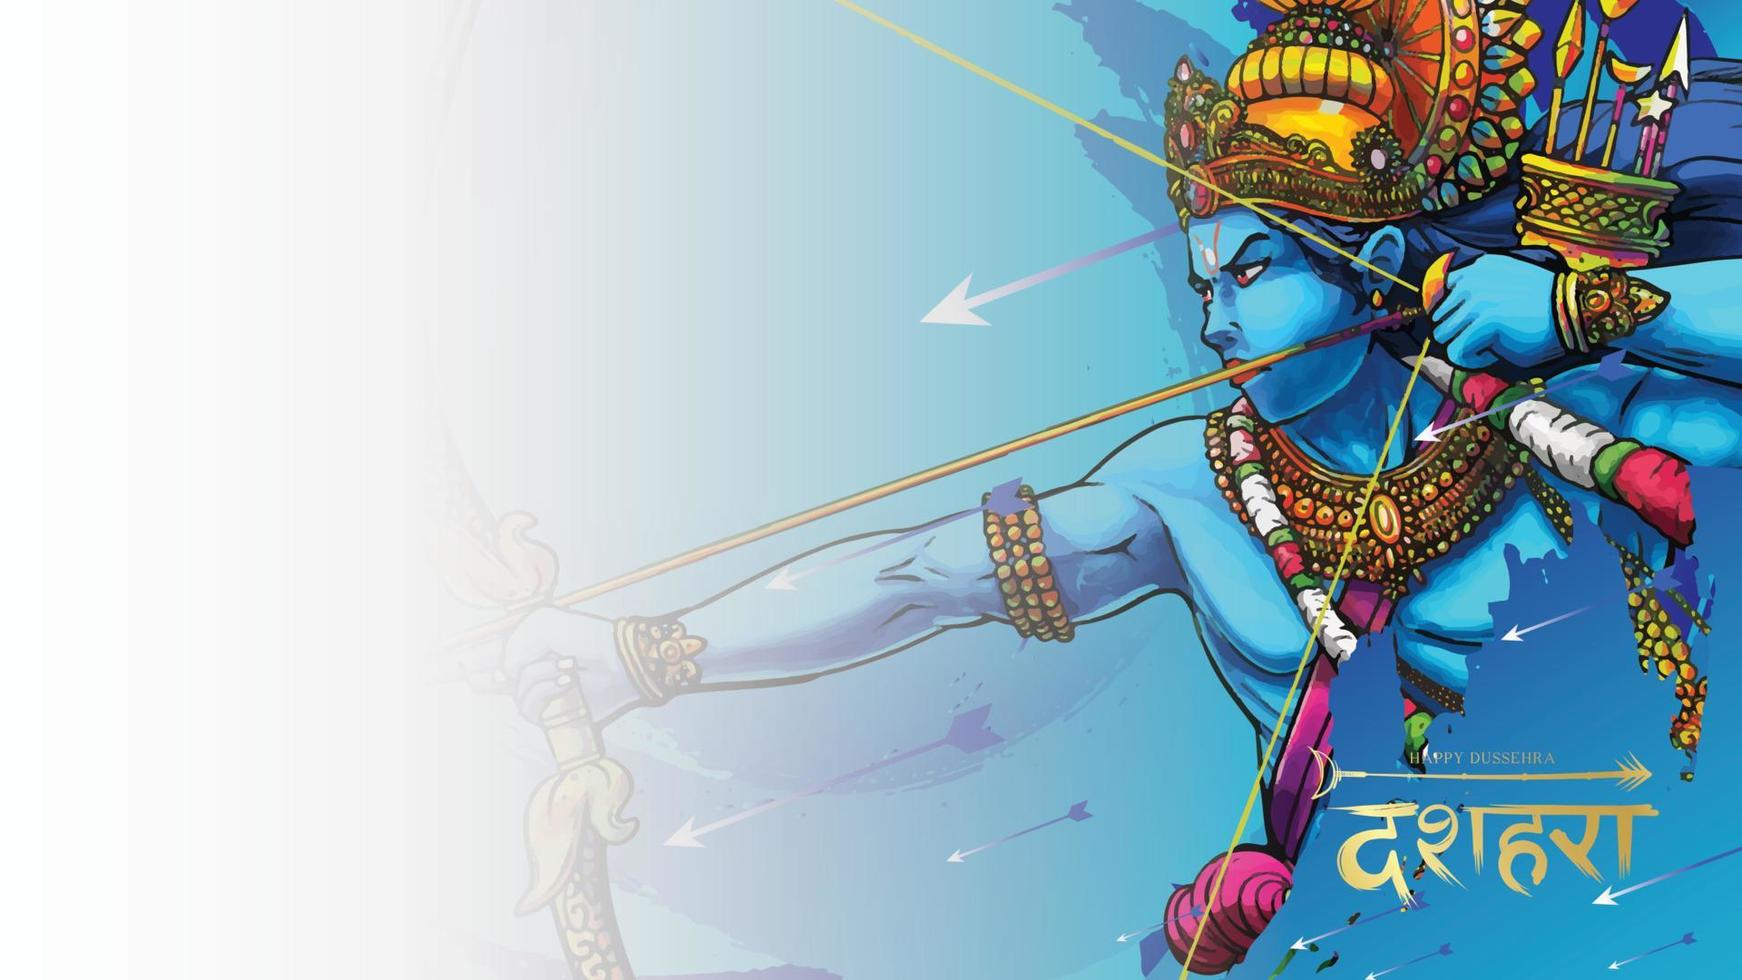 Lord Rama tötet Ravana beim Happy Dussehra Navratri Poster Festival in Indien. übersetzung dussehra vektor